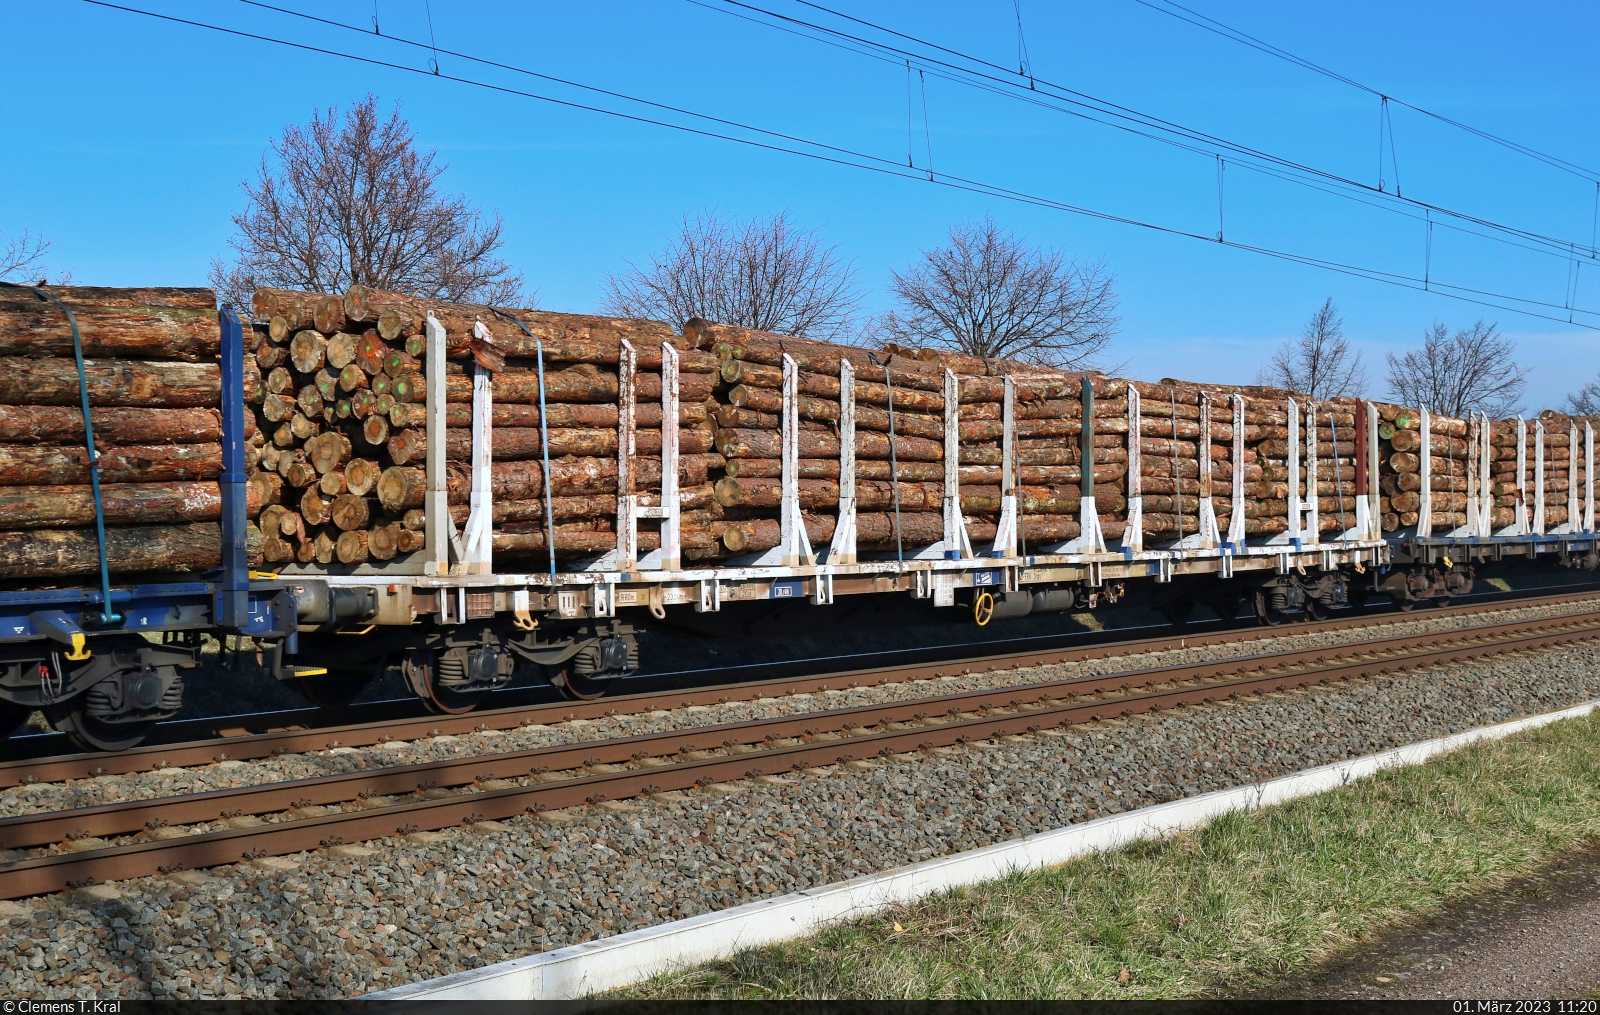 Vierachsiger Flachwagen für den Transport von Holzstämmen mit der Bezeichnung  Snps <sup>2</sup>  (37 80 4725 040-6 D-ERR), gezogen von 187 316-5 in Braschwitz Richtung Halle (Saale).

🧰 ERR European Rail Rent GmbH (ERR)
🕓 1.3.2023 | 11:20 Uhr